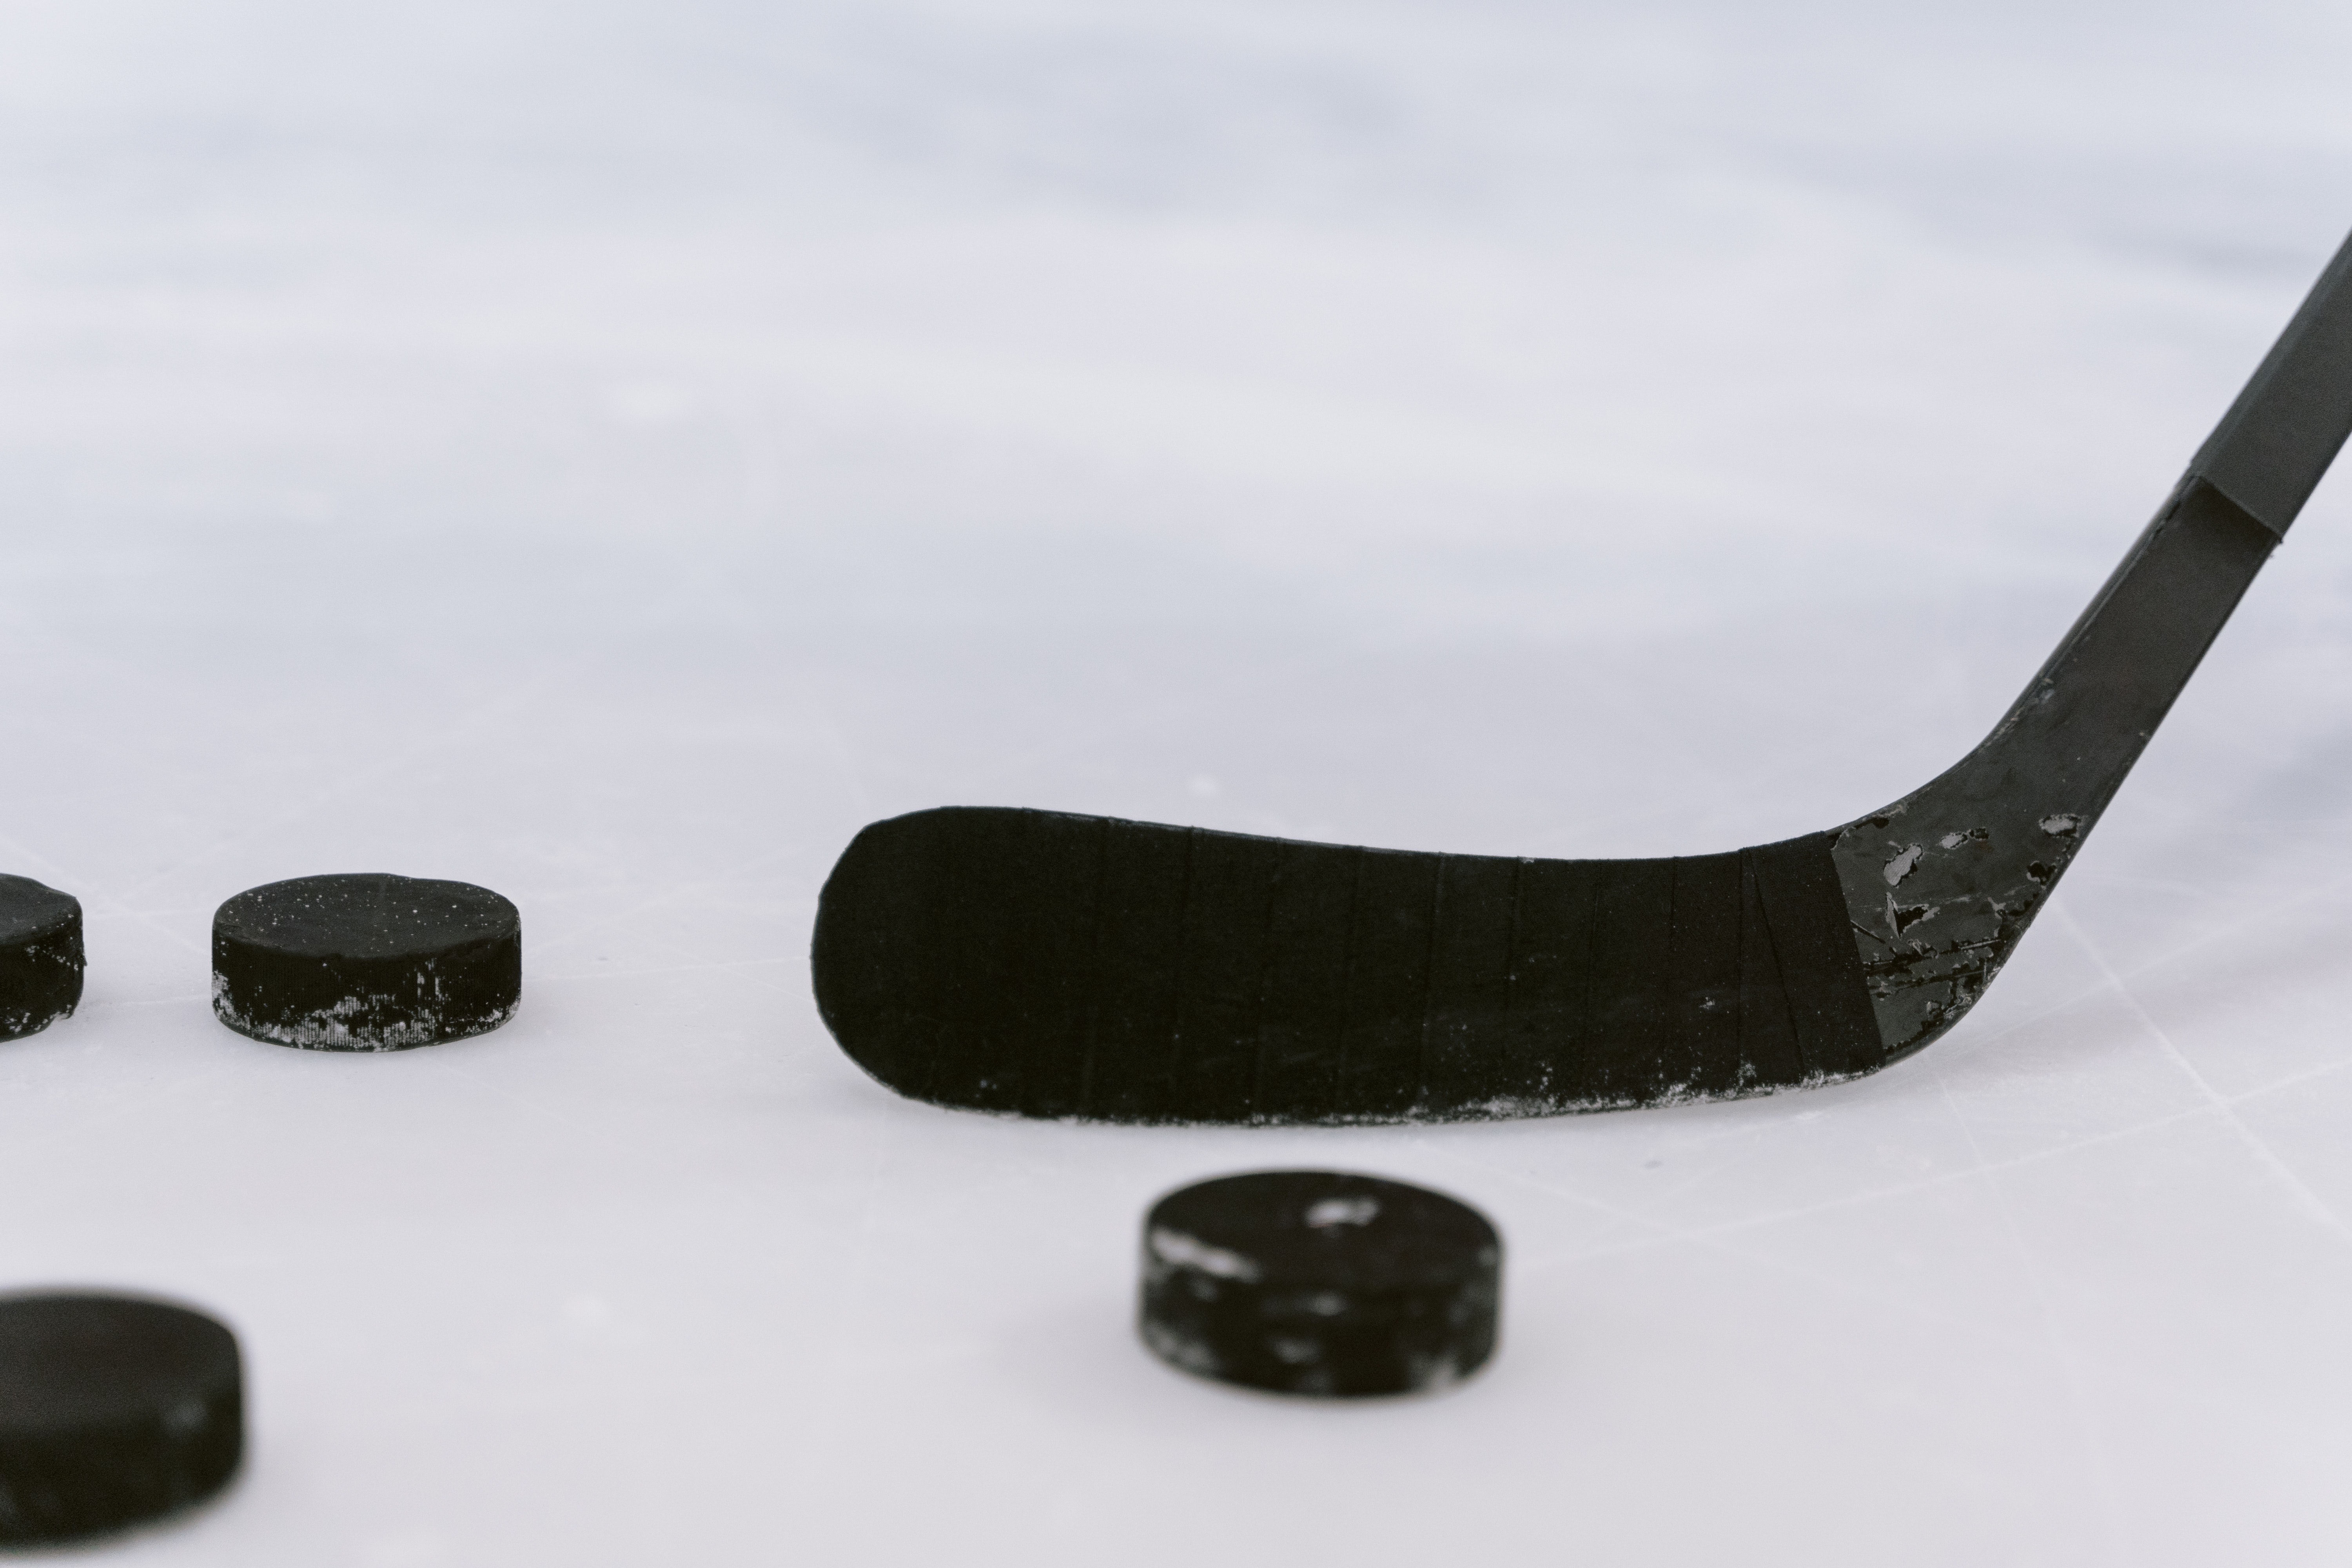 Palo de hockey sobre el hielo de una pista y varias pastillas de hockey